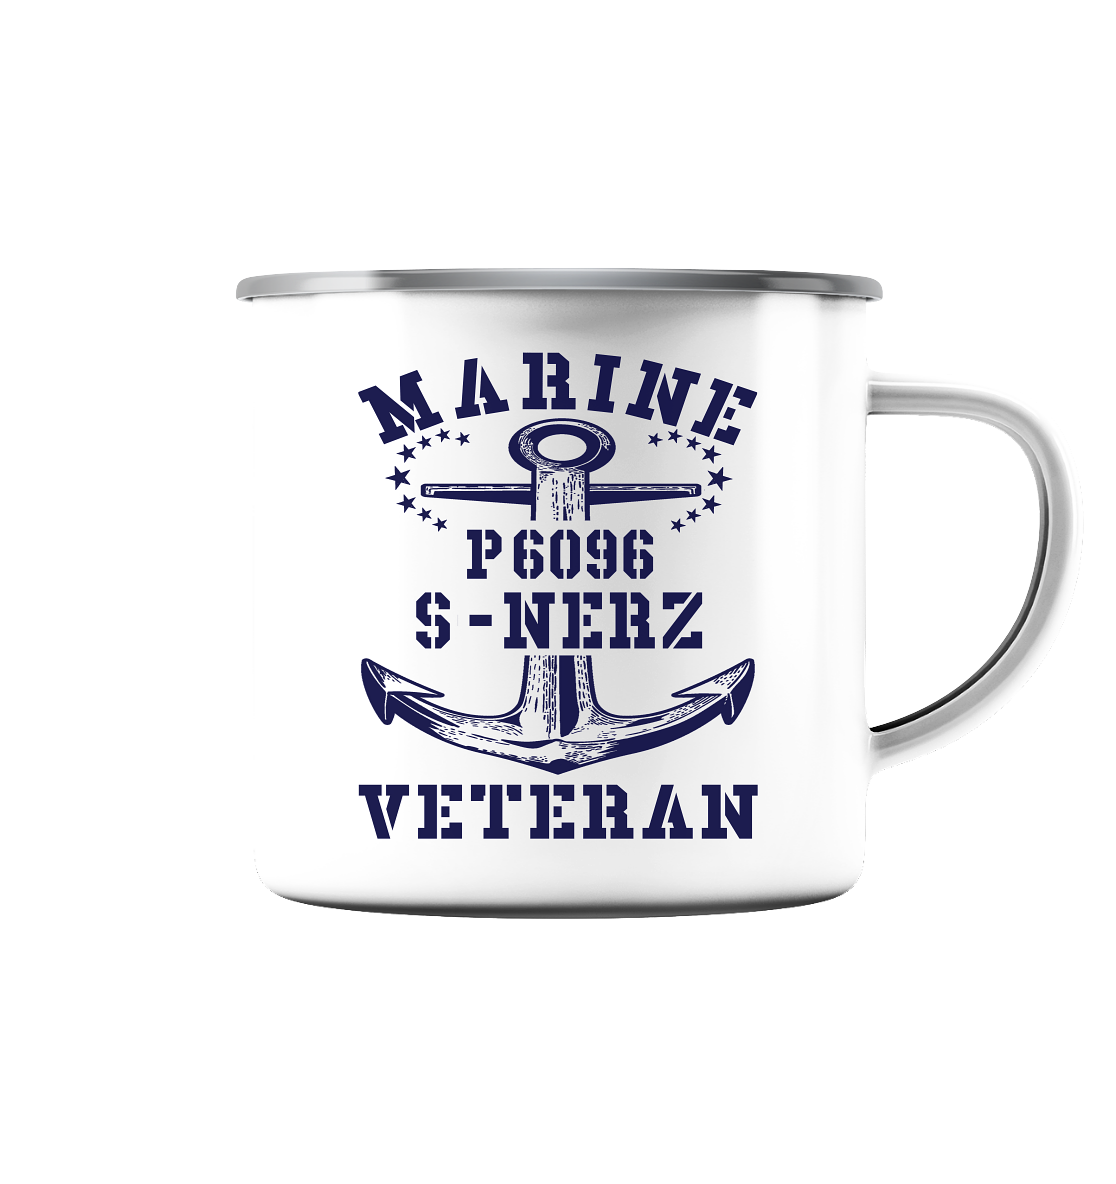 P6096 S-NERZ Marine Veteran - Emaille Tasse (Silber)